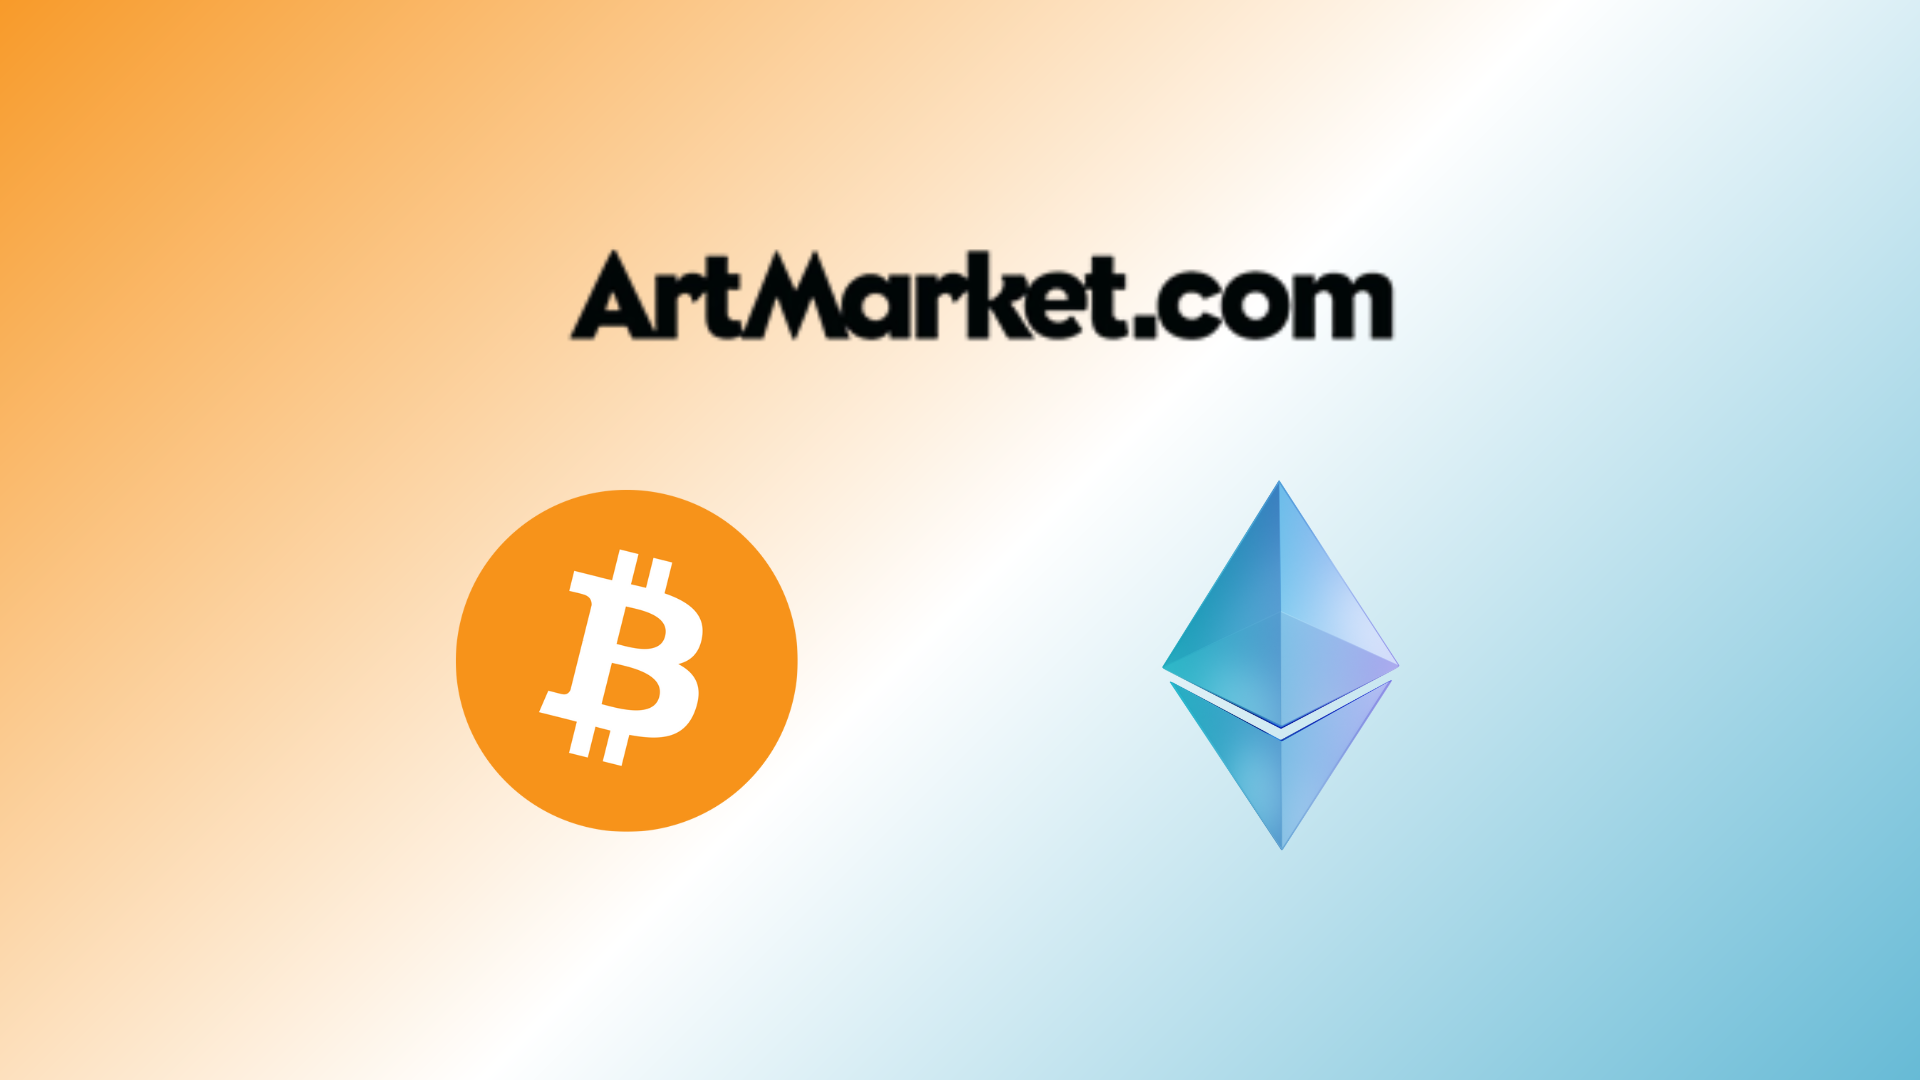 Artmarket.com intègre désormais la possibilité d'acheter et de vendre en Bitcoin et Ether